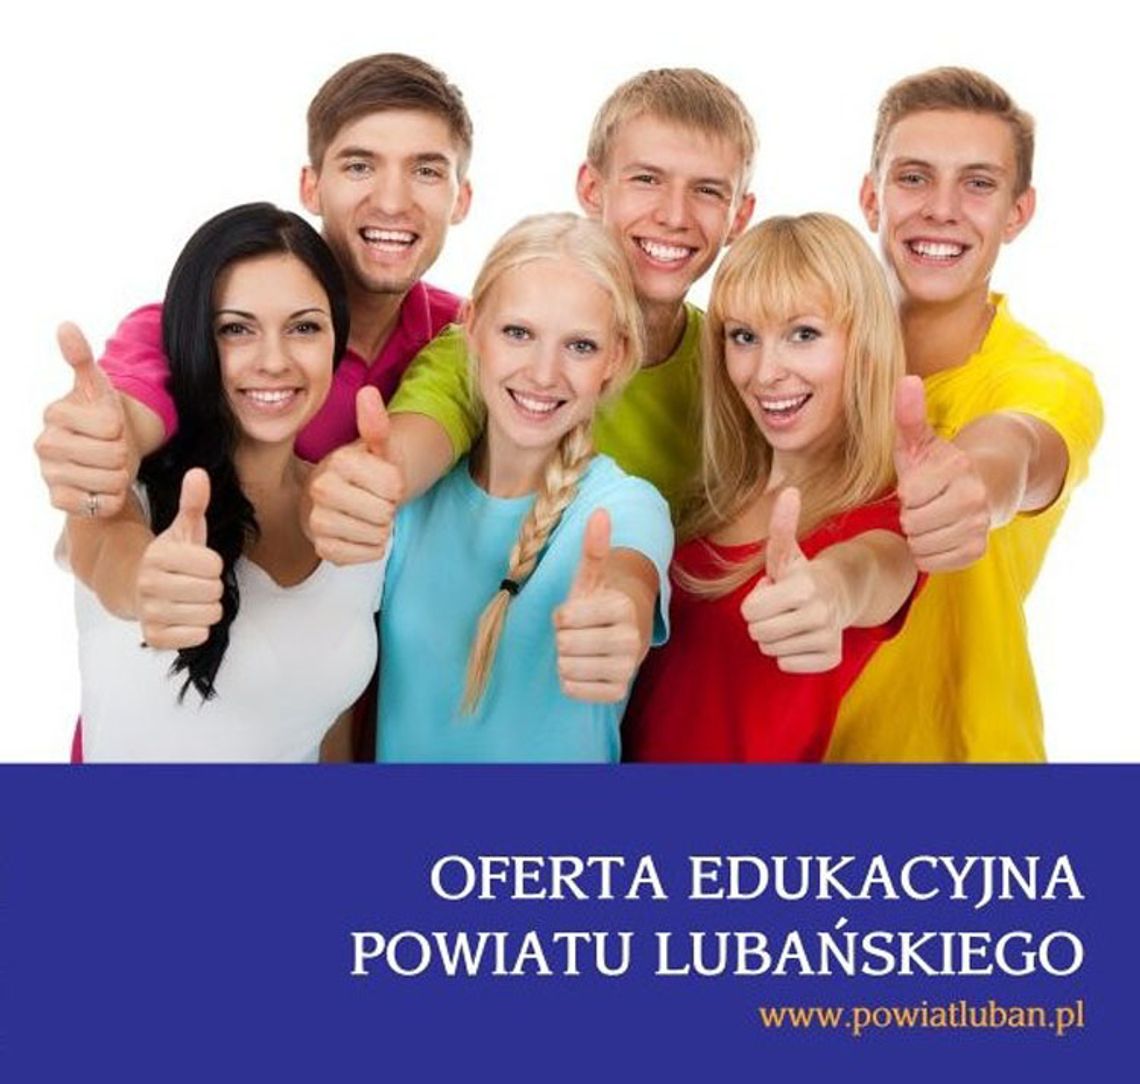 Oferta edukacyjna szkół Powiatu Lubańskiego